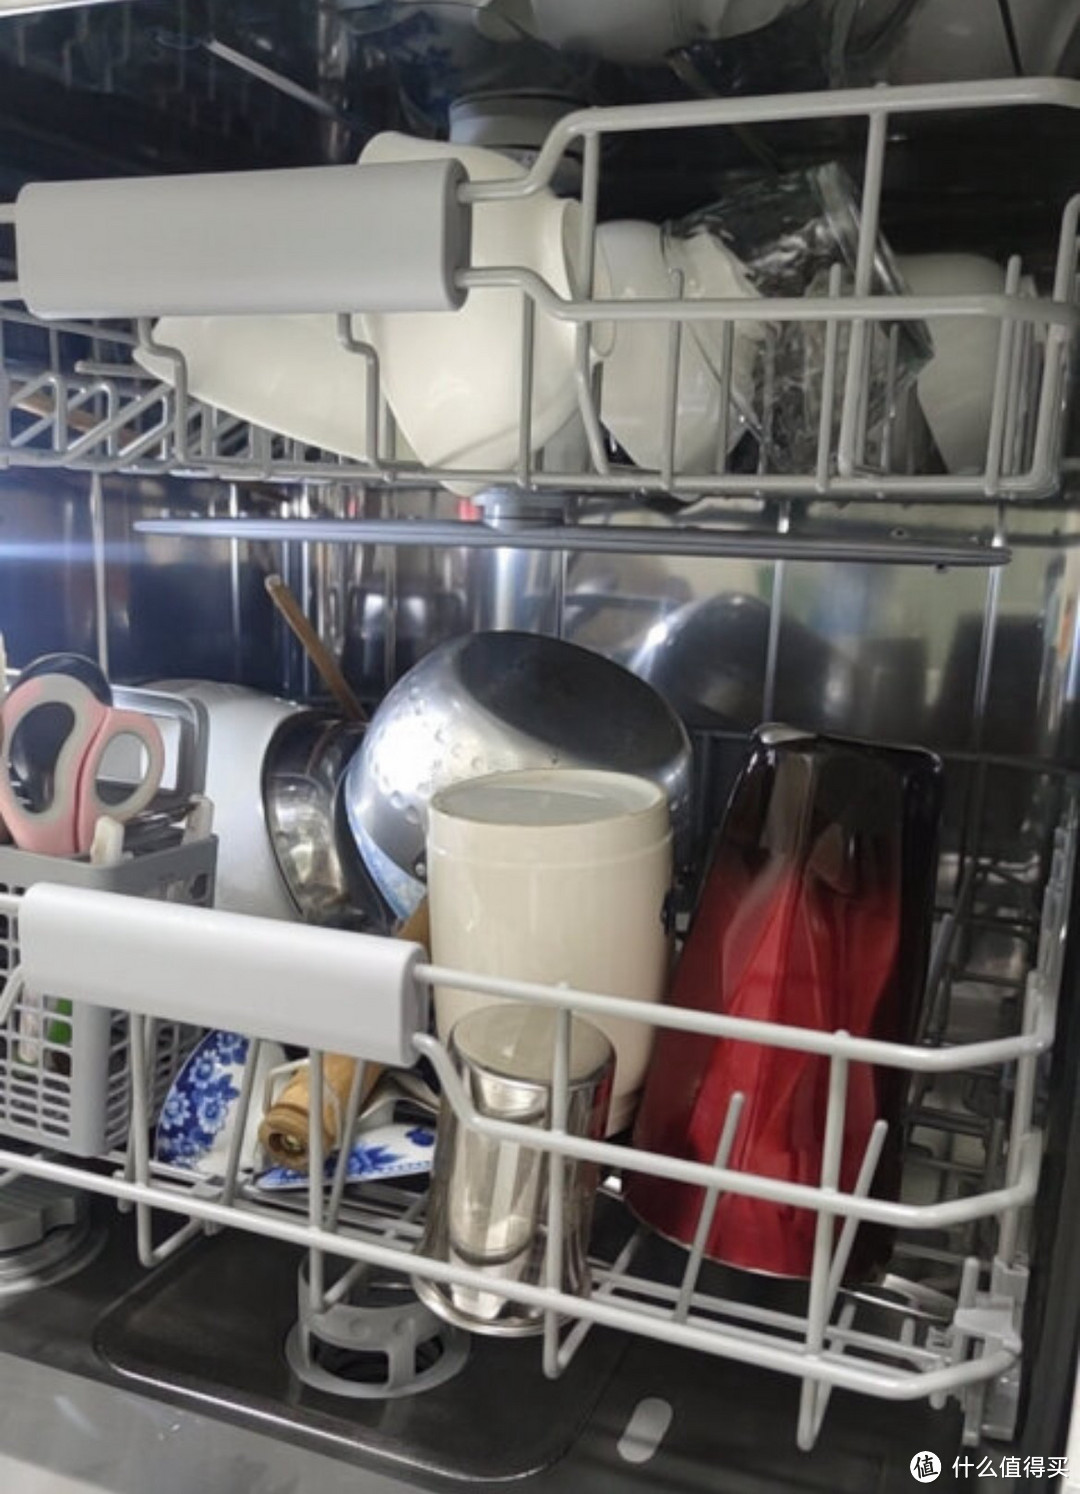 洗碗机在厨房卫生方面具有诸多优点。